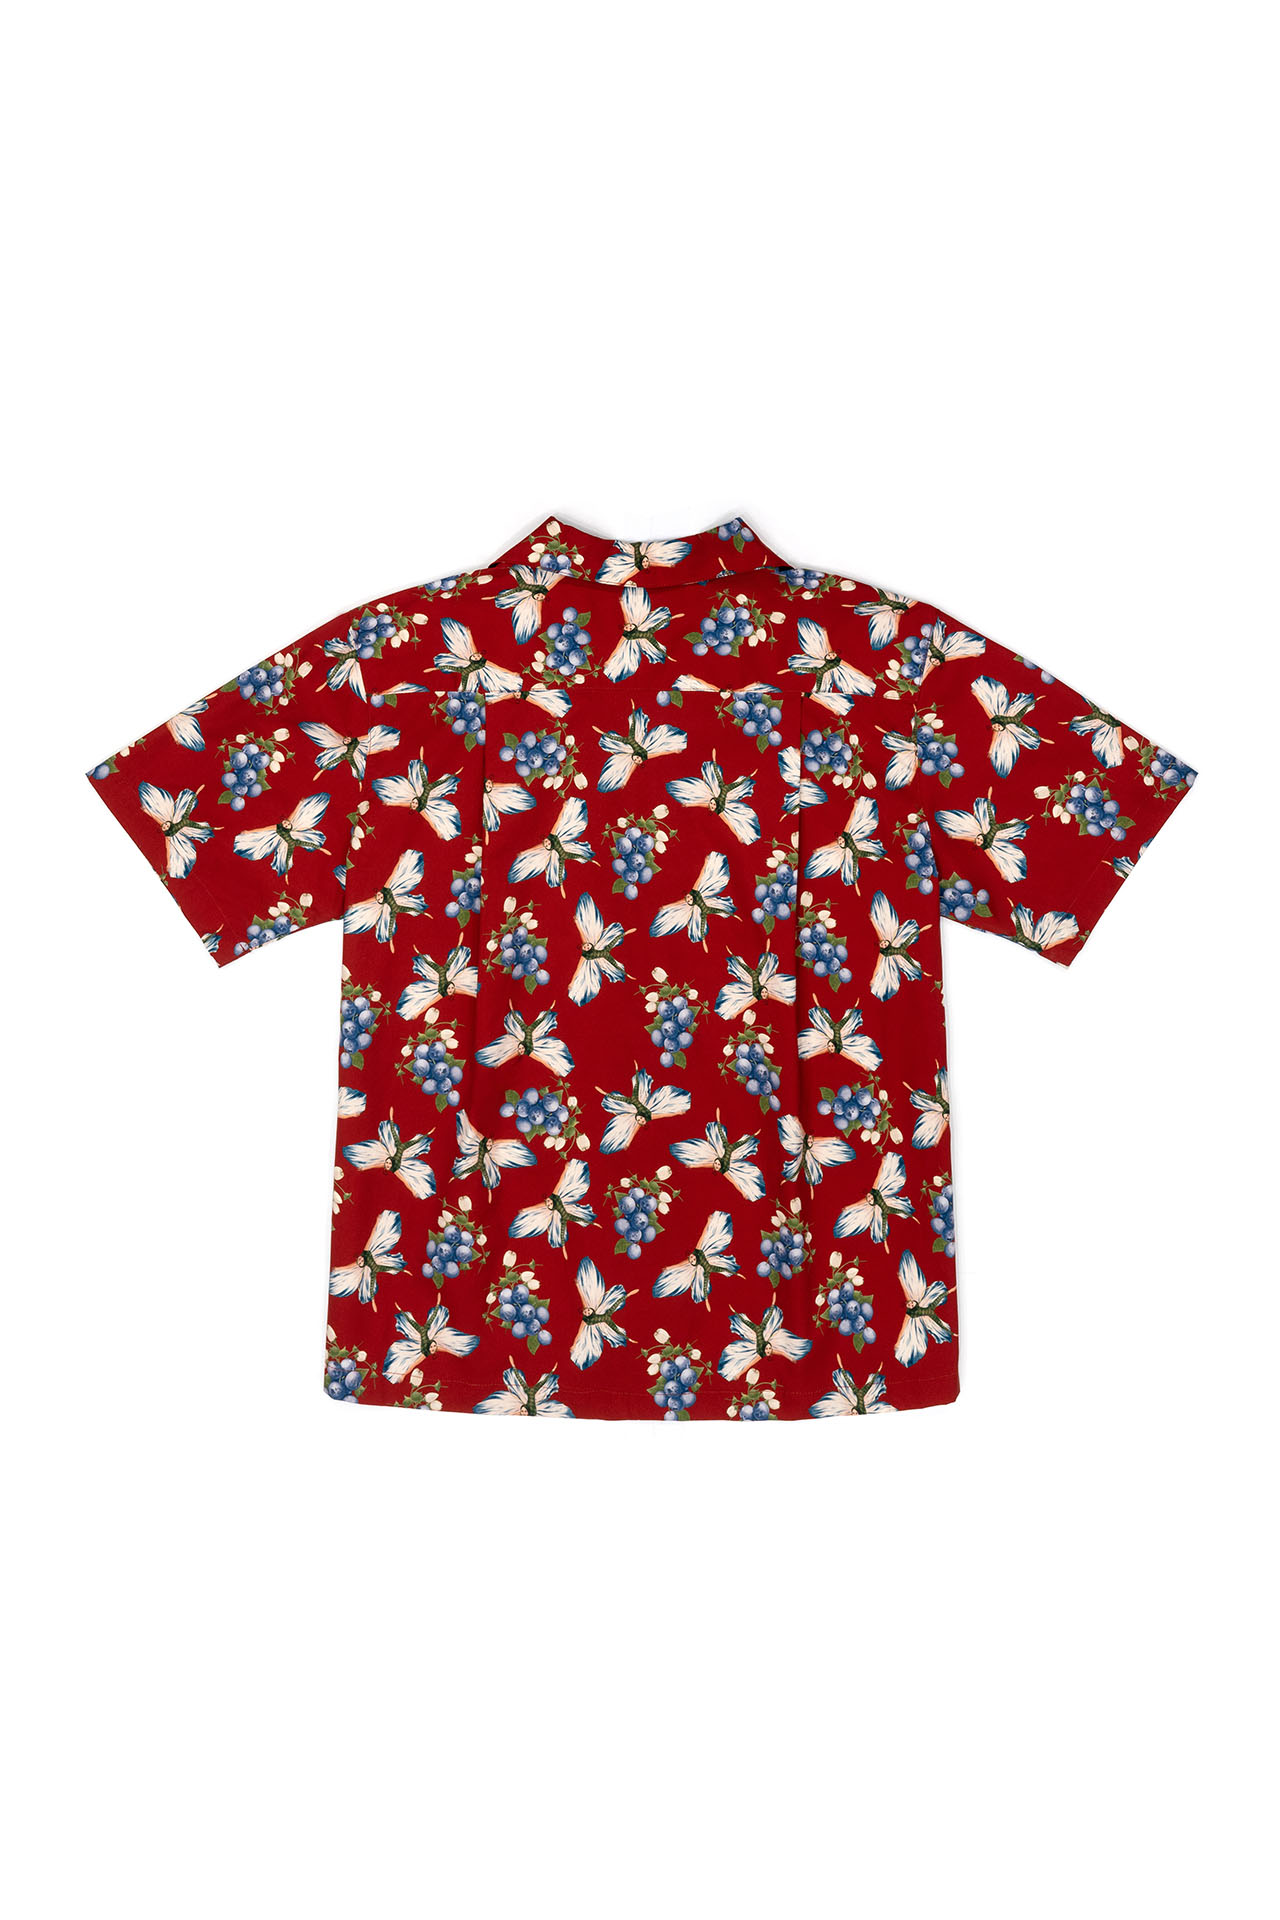 블루베리 하와이안 셔츠